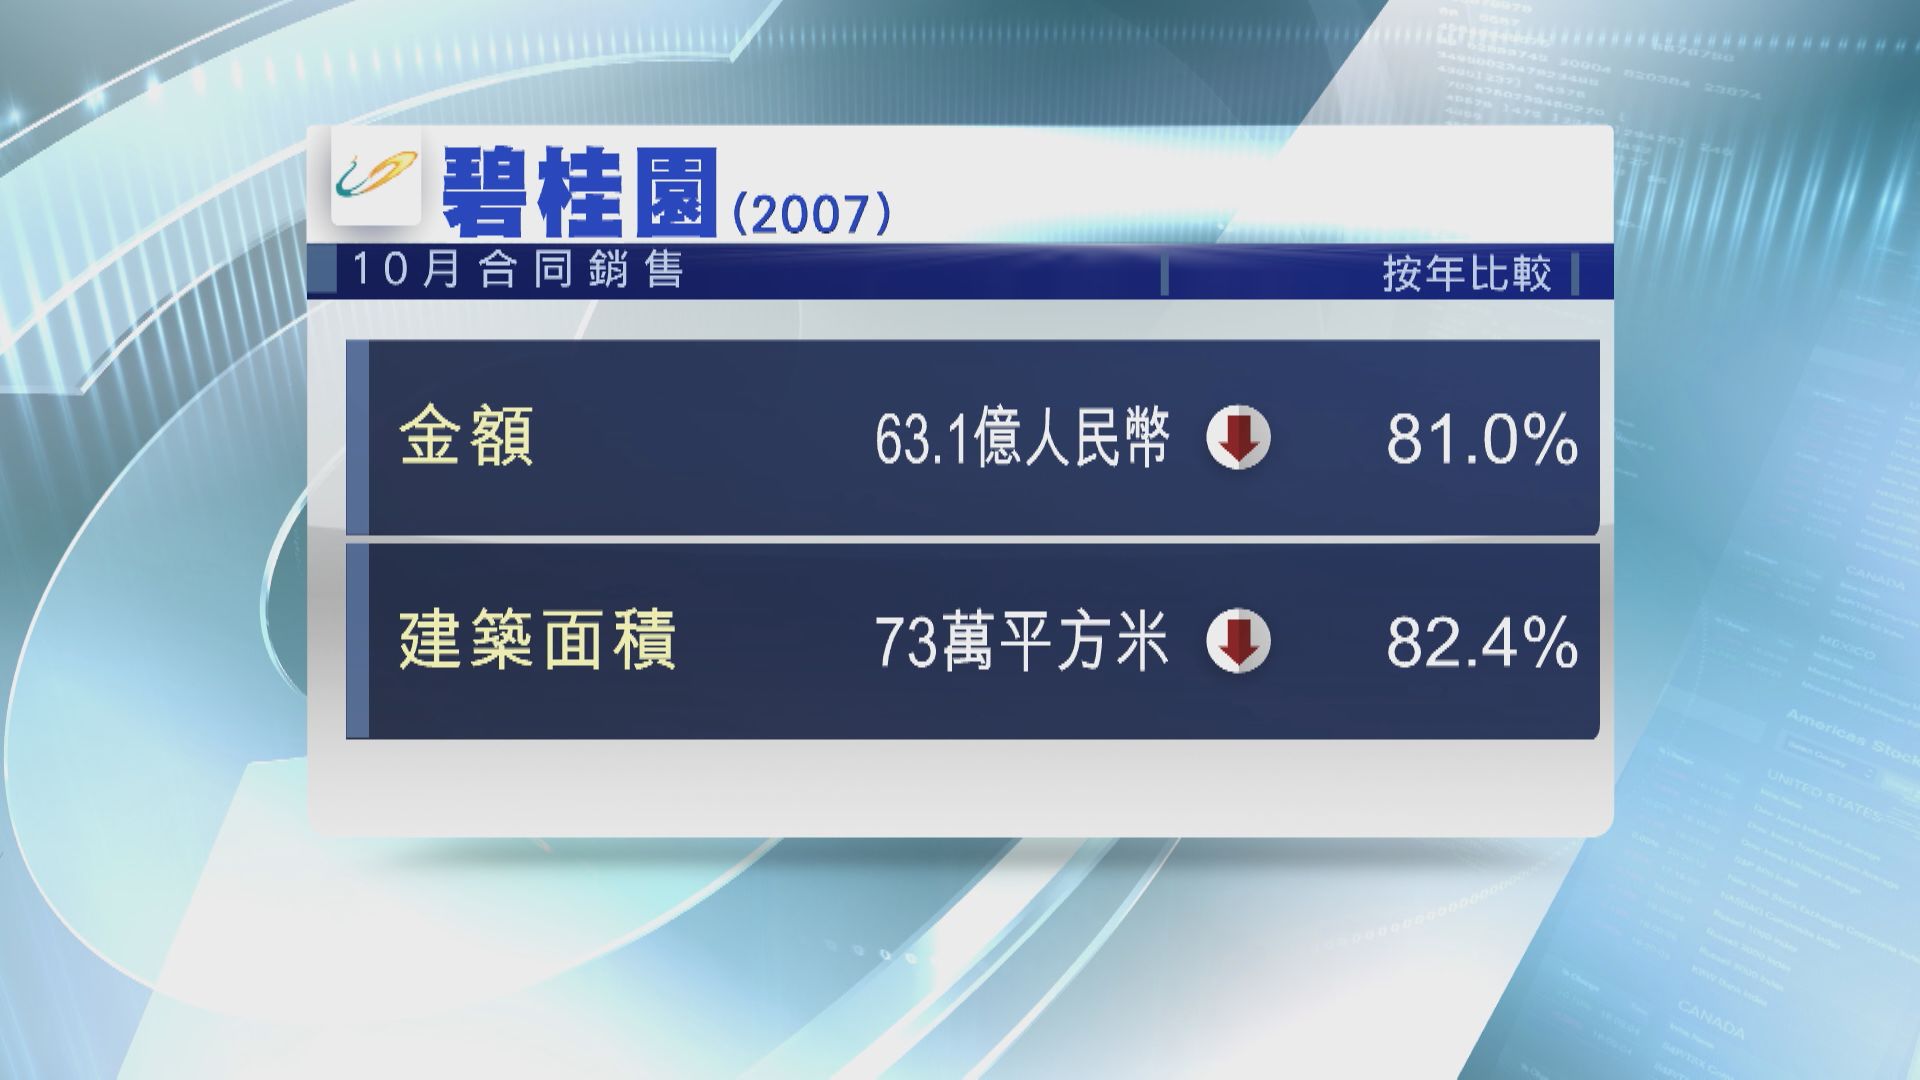 【內房危機】碧桂園10月合同銷售按年大跌81%